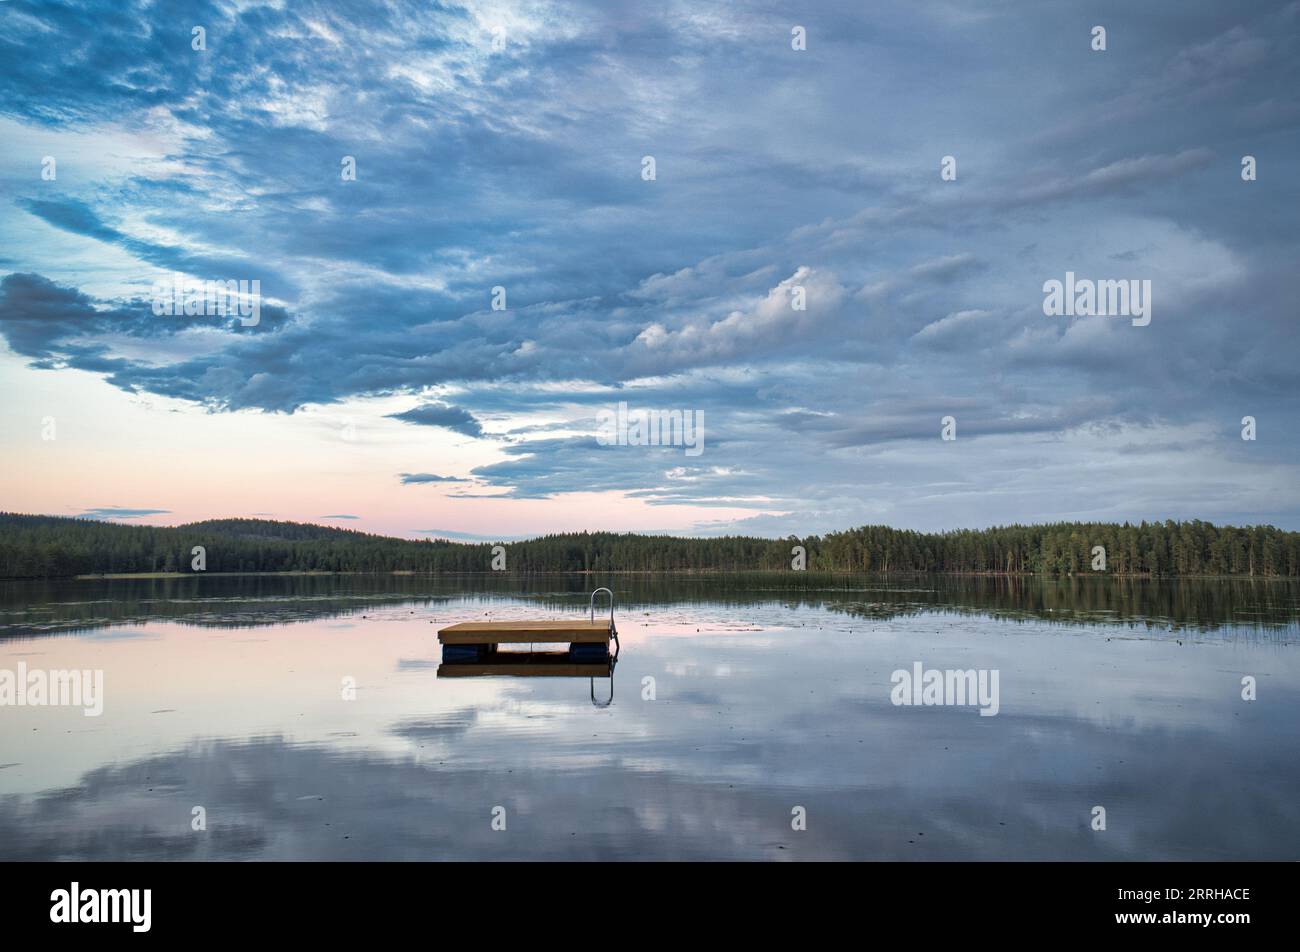 Île de baignade en Suède sur un lac au coucher du soleil. Nuages réfléchis dans l'eau. Natation plaisir en vacances avec loisirs en Scandinavie Banque D'Images